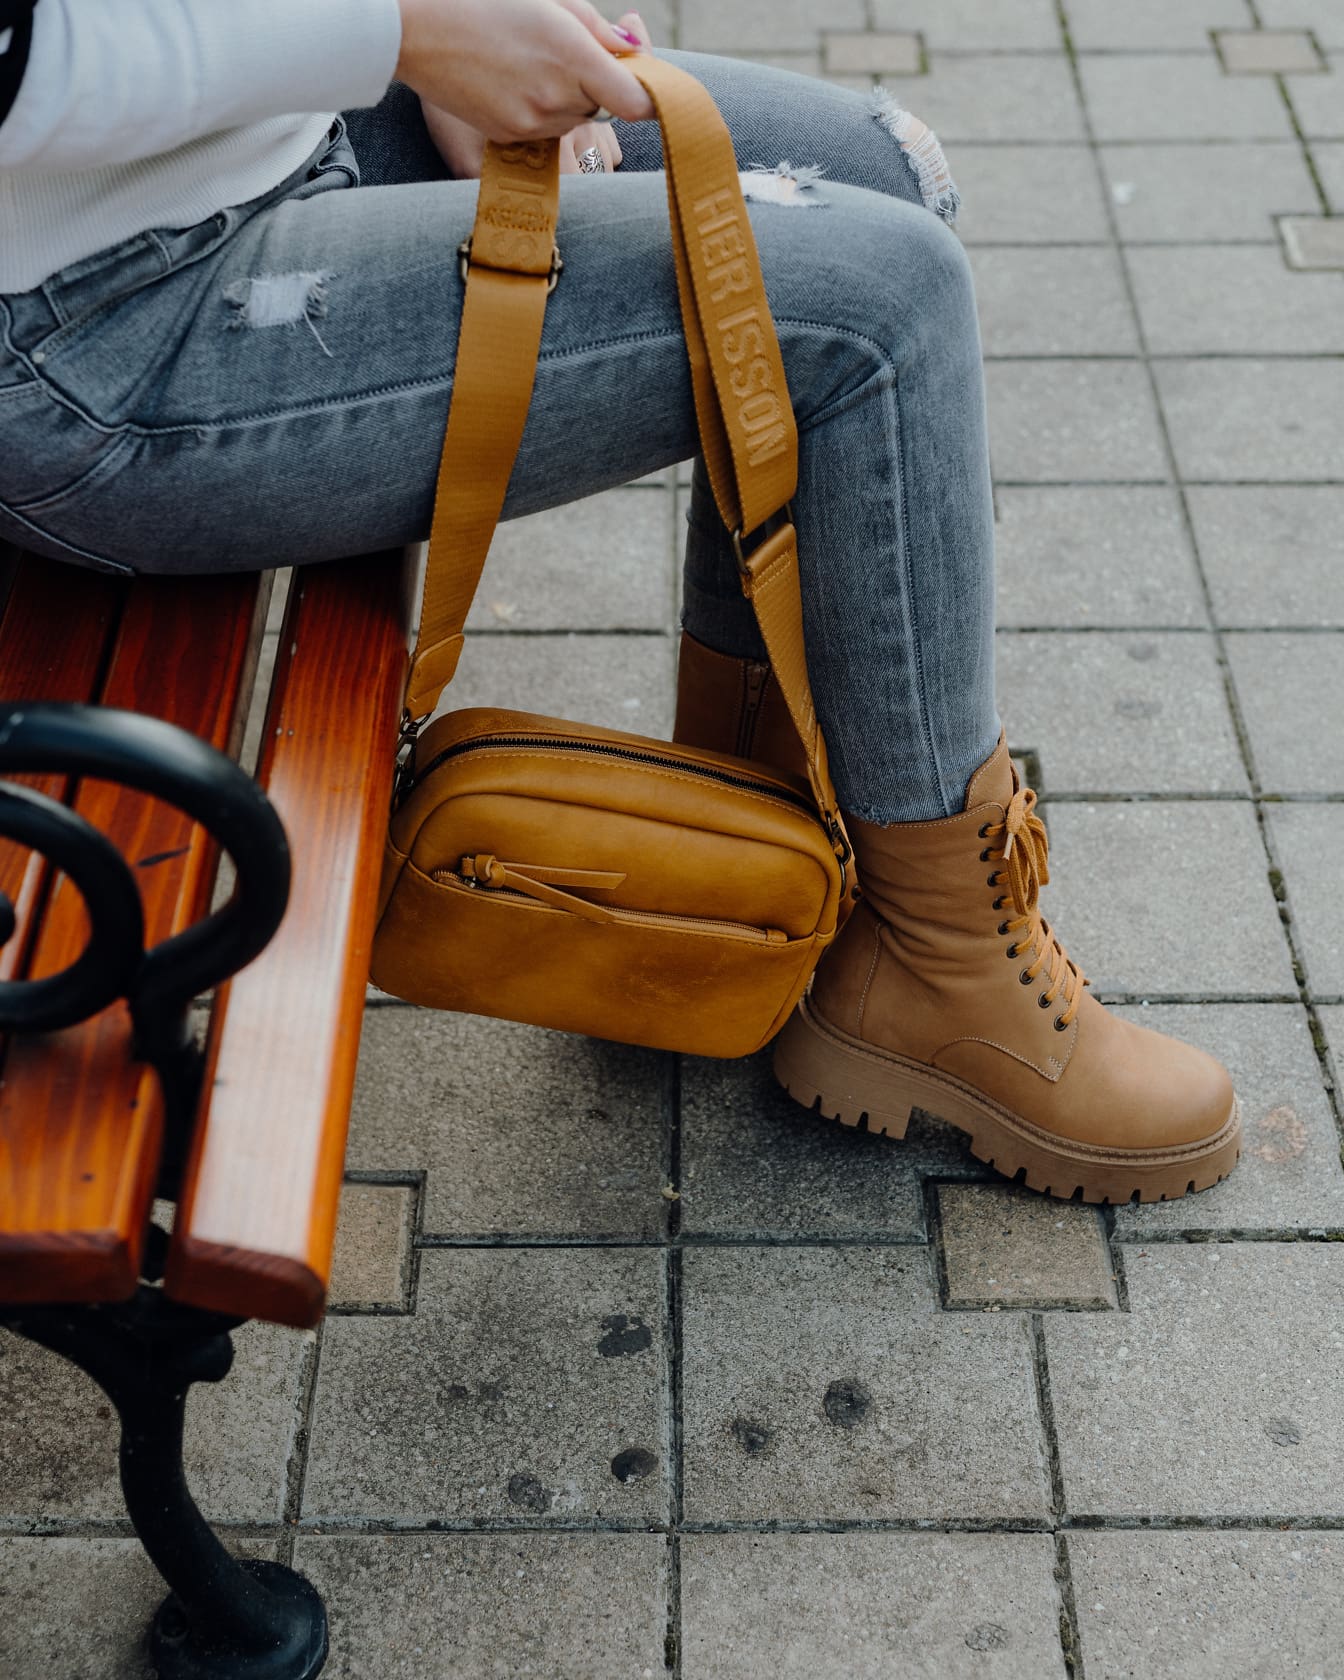 Άτομο που κάθεται σε ένα παγκάκι κρατώντας κιτρινωπό καφέ δερμάτινη τσάντα στο χέρι